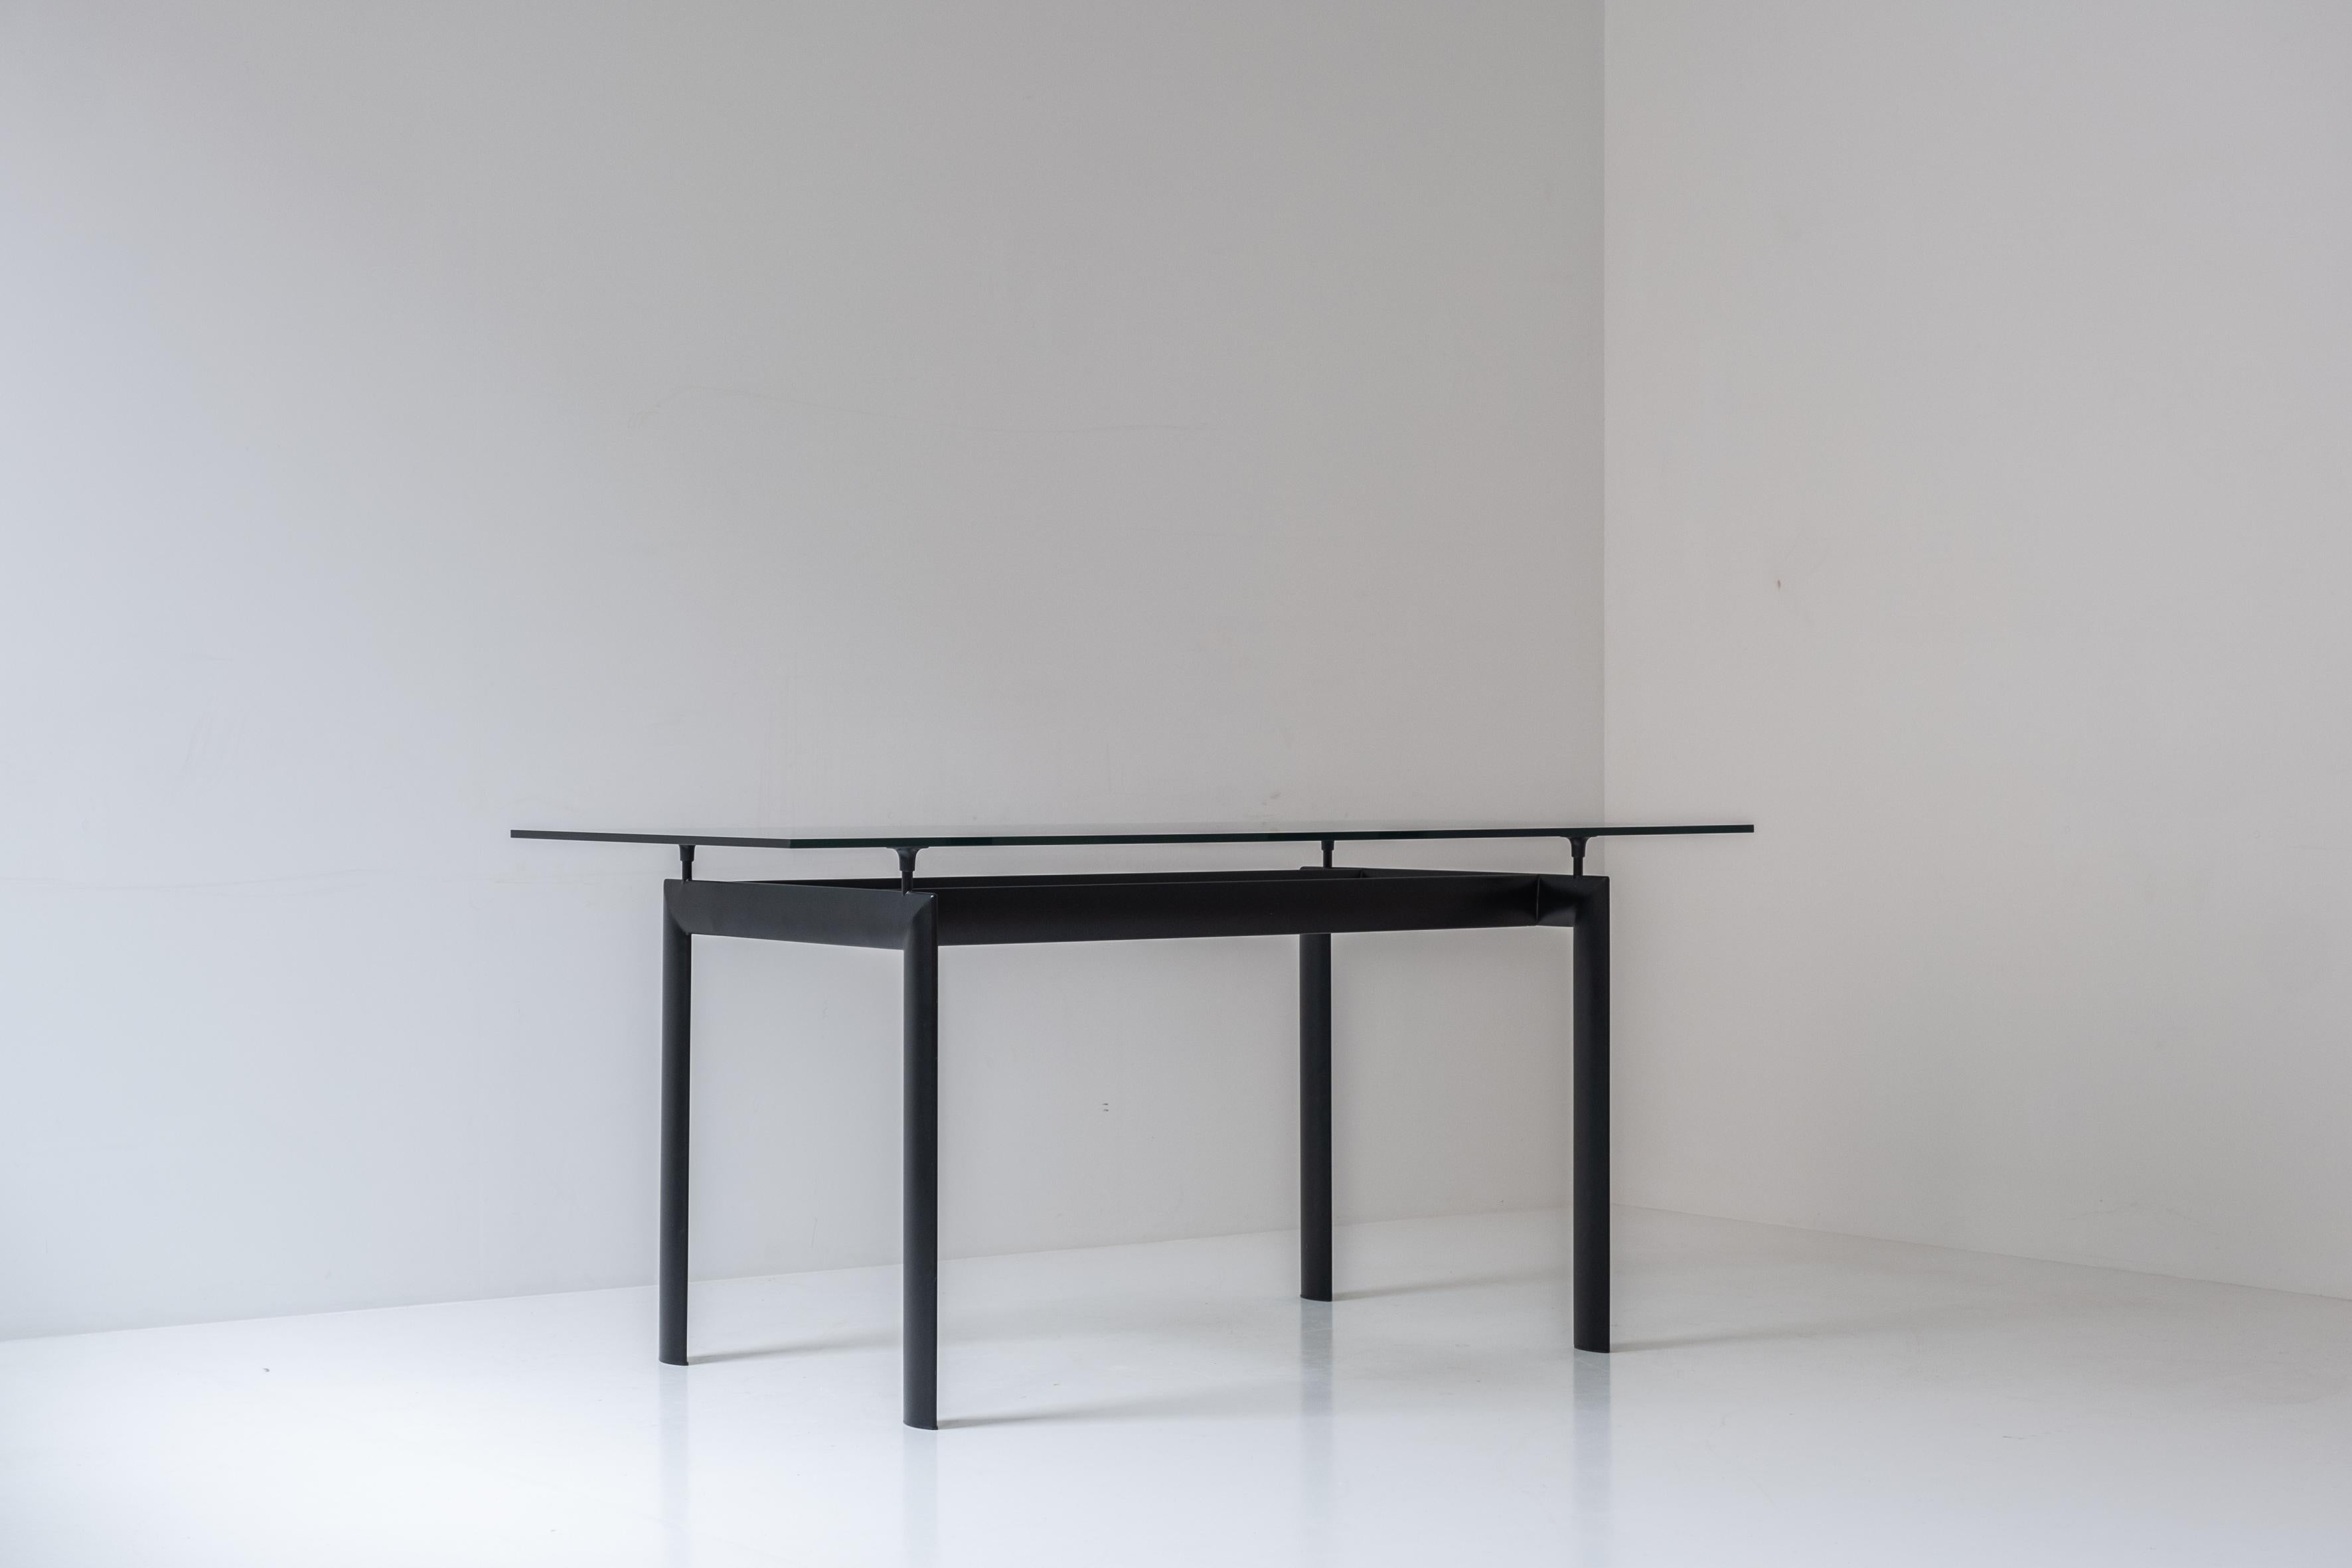 Table de salle à manger rectangulaire des années 1980. Cette table est composée d'une base en aluminium laqué noir et d'un plateau en verre. Présenté en très bon état. Clairement inspirée de la LC6 de Le Corbusier.